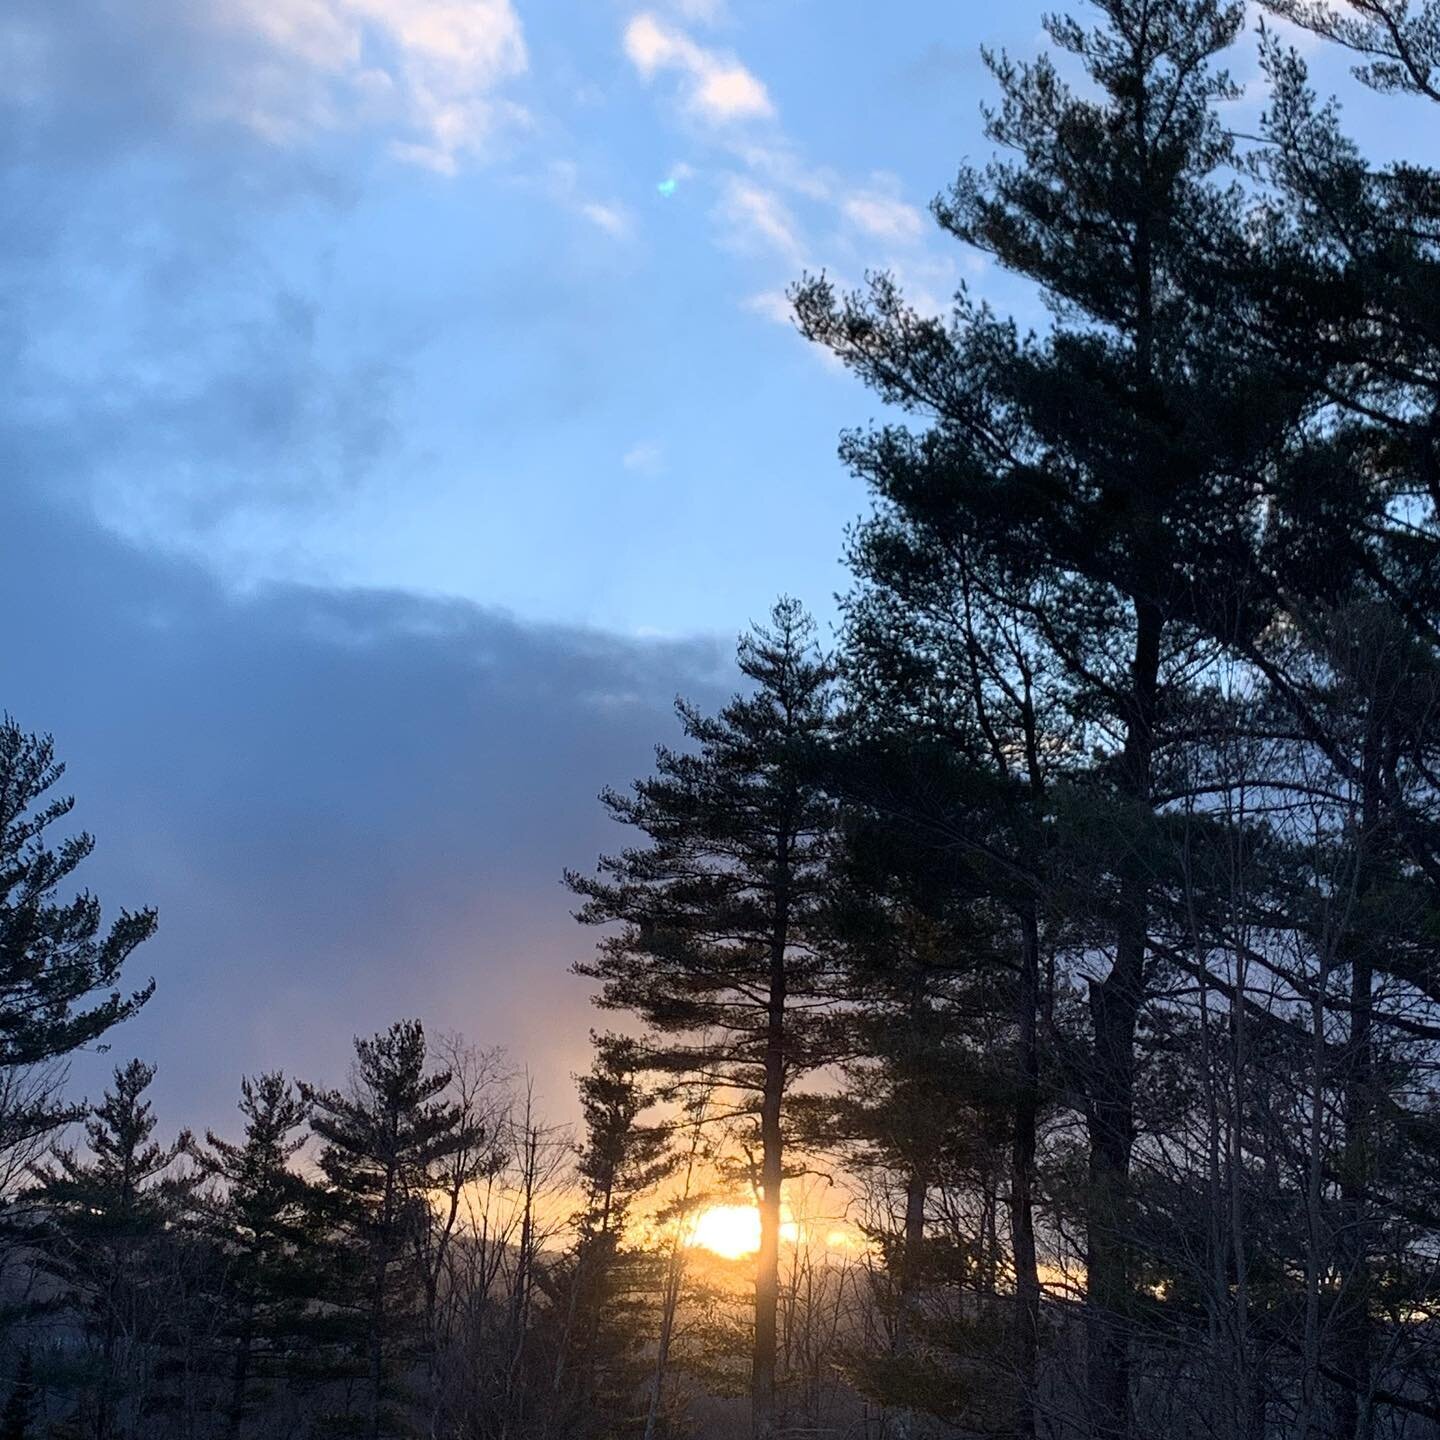 Sunset in Vermont! #magicoma #beanofthefields #vermont #sunset